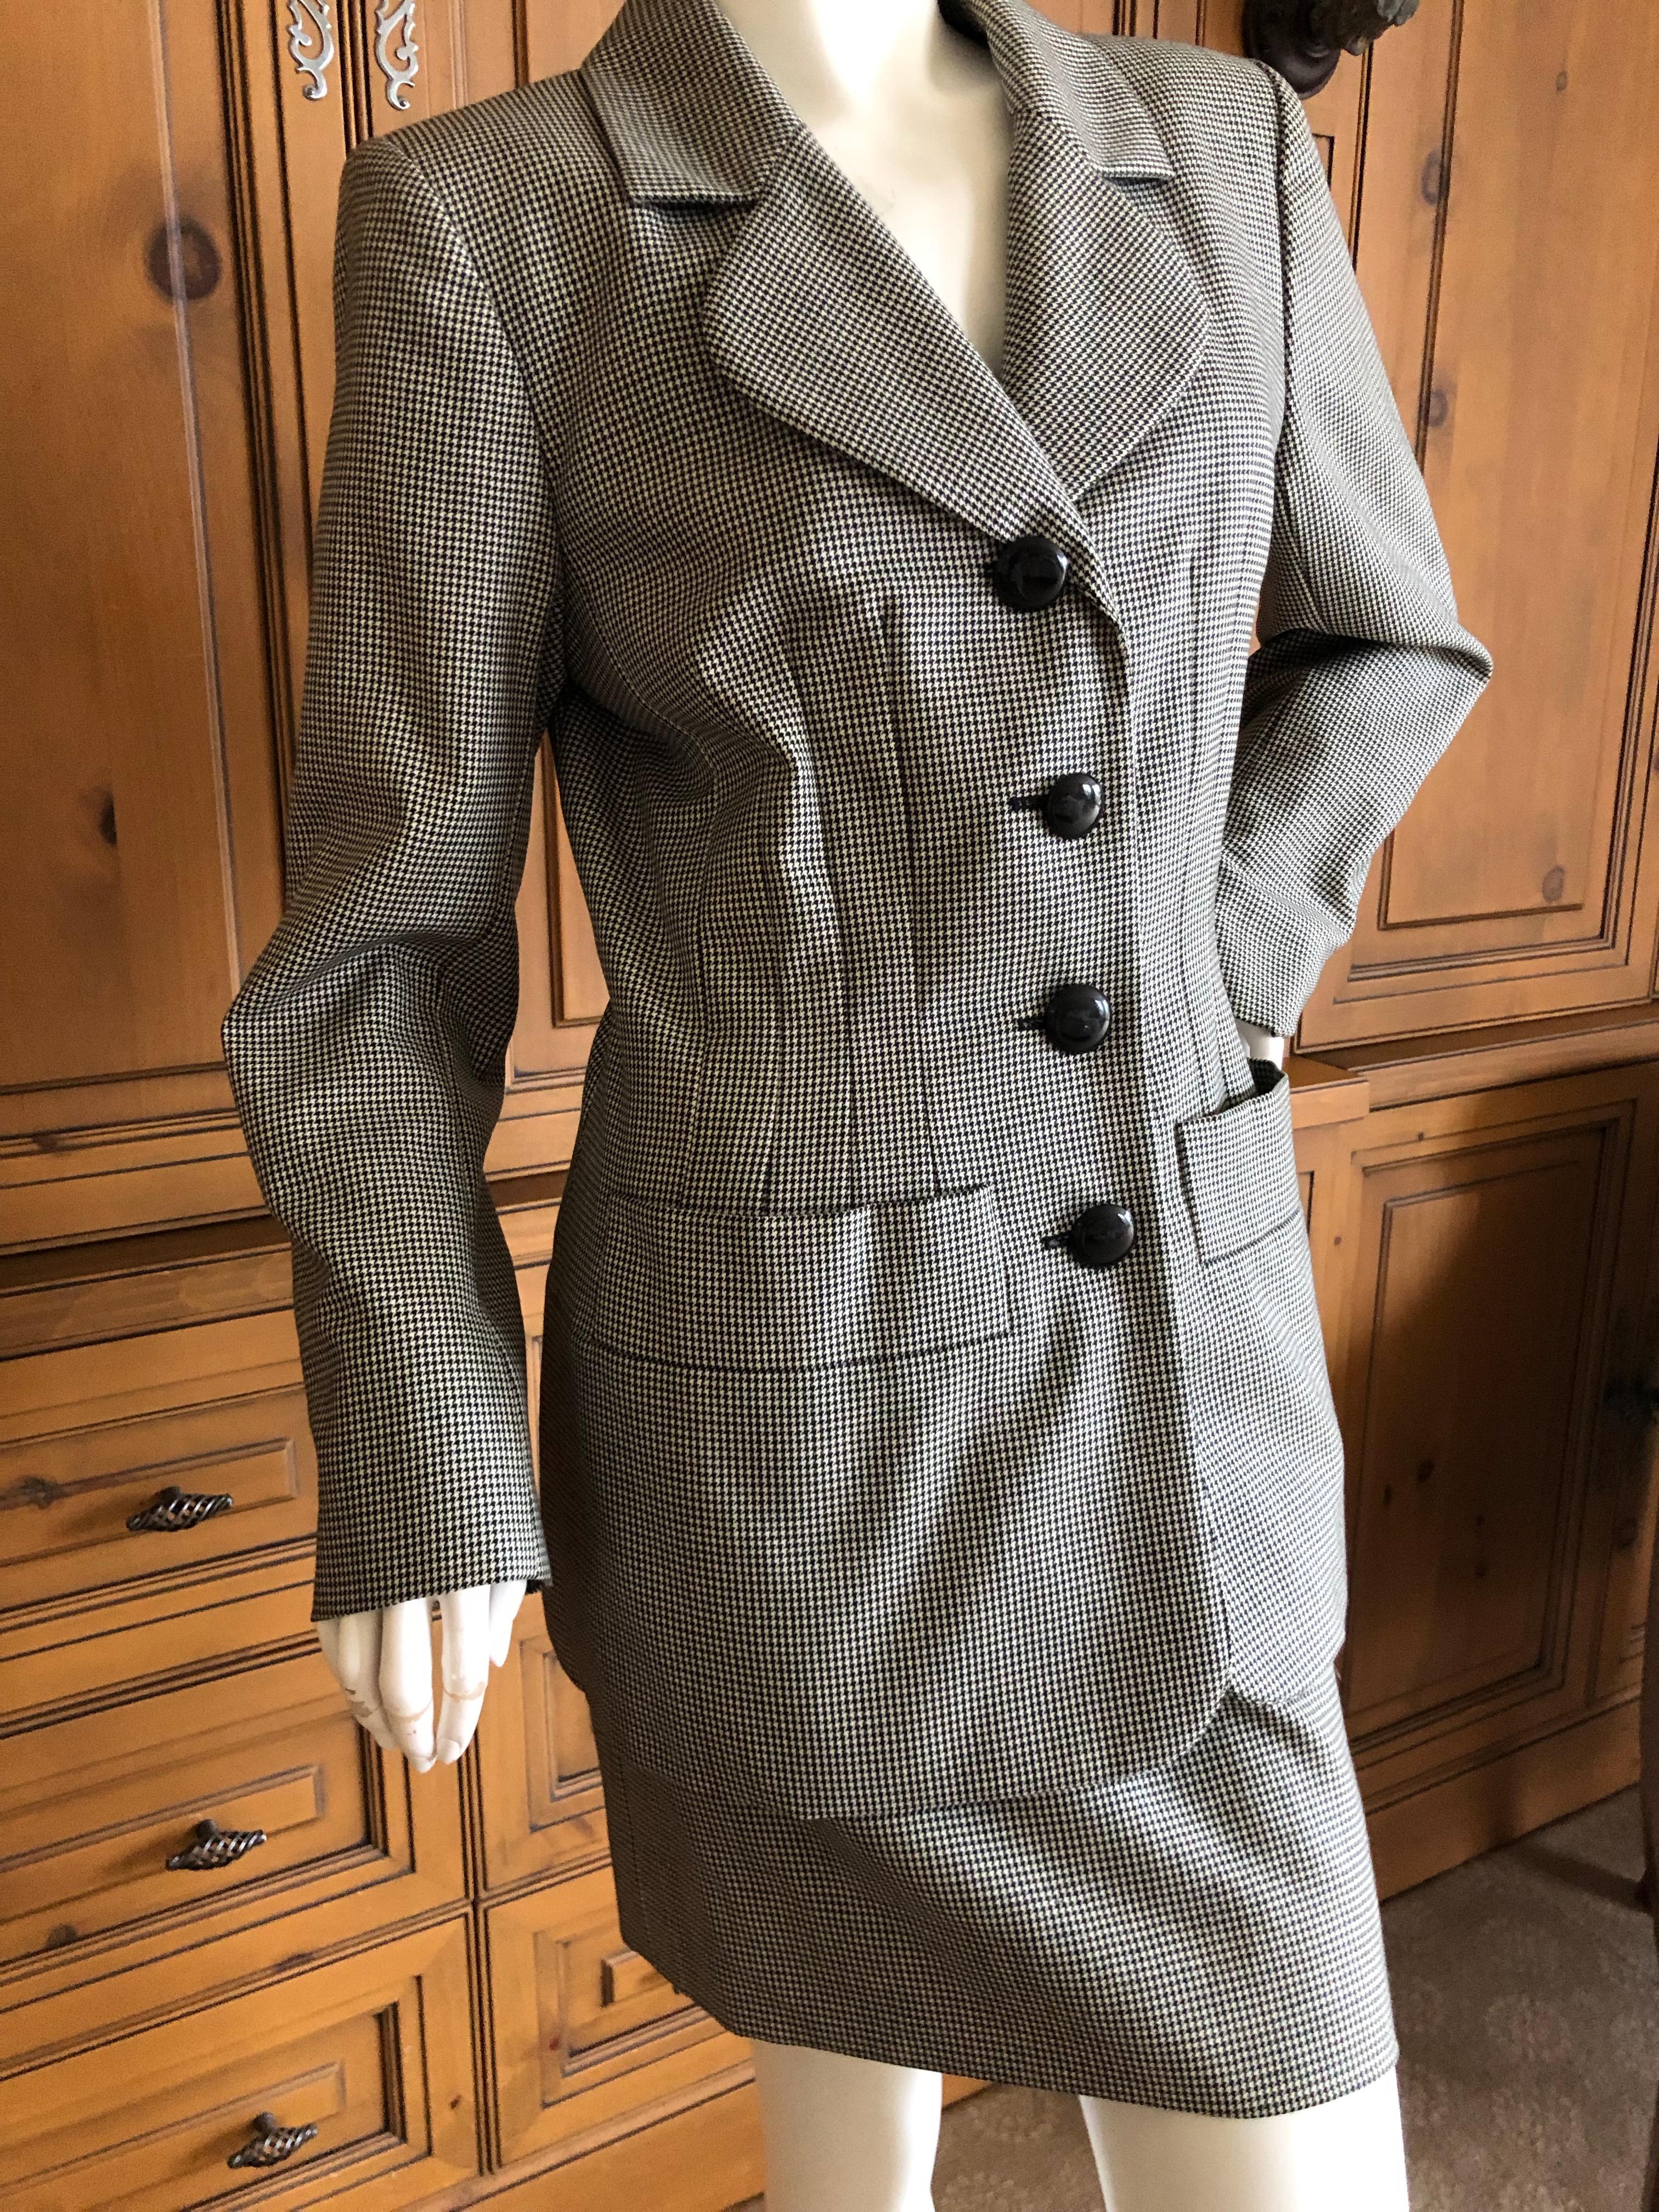 Yves Saint Laurent Rive Guache Vintage 1980's Houndstooth Suit For Sale 2